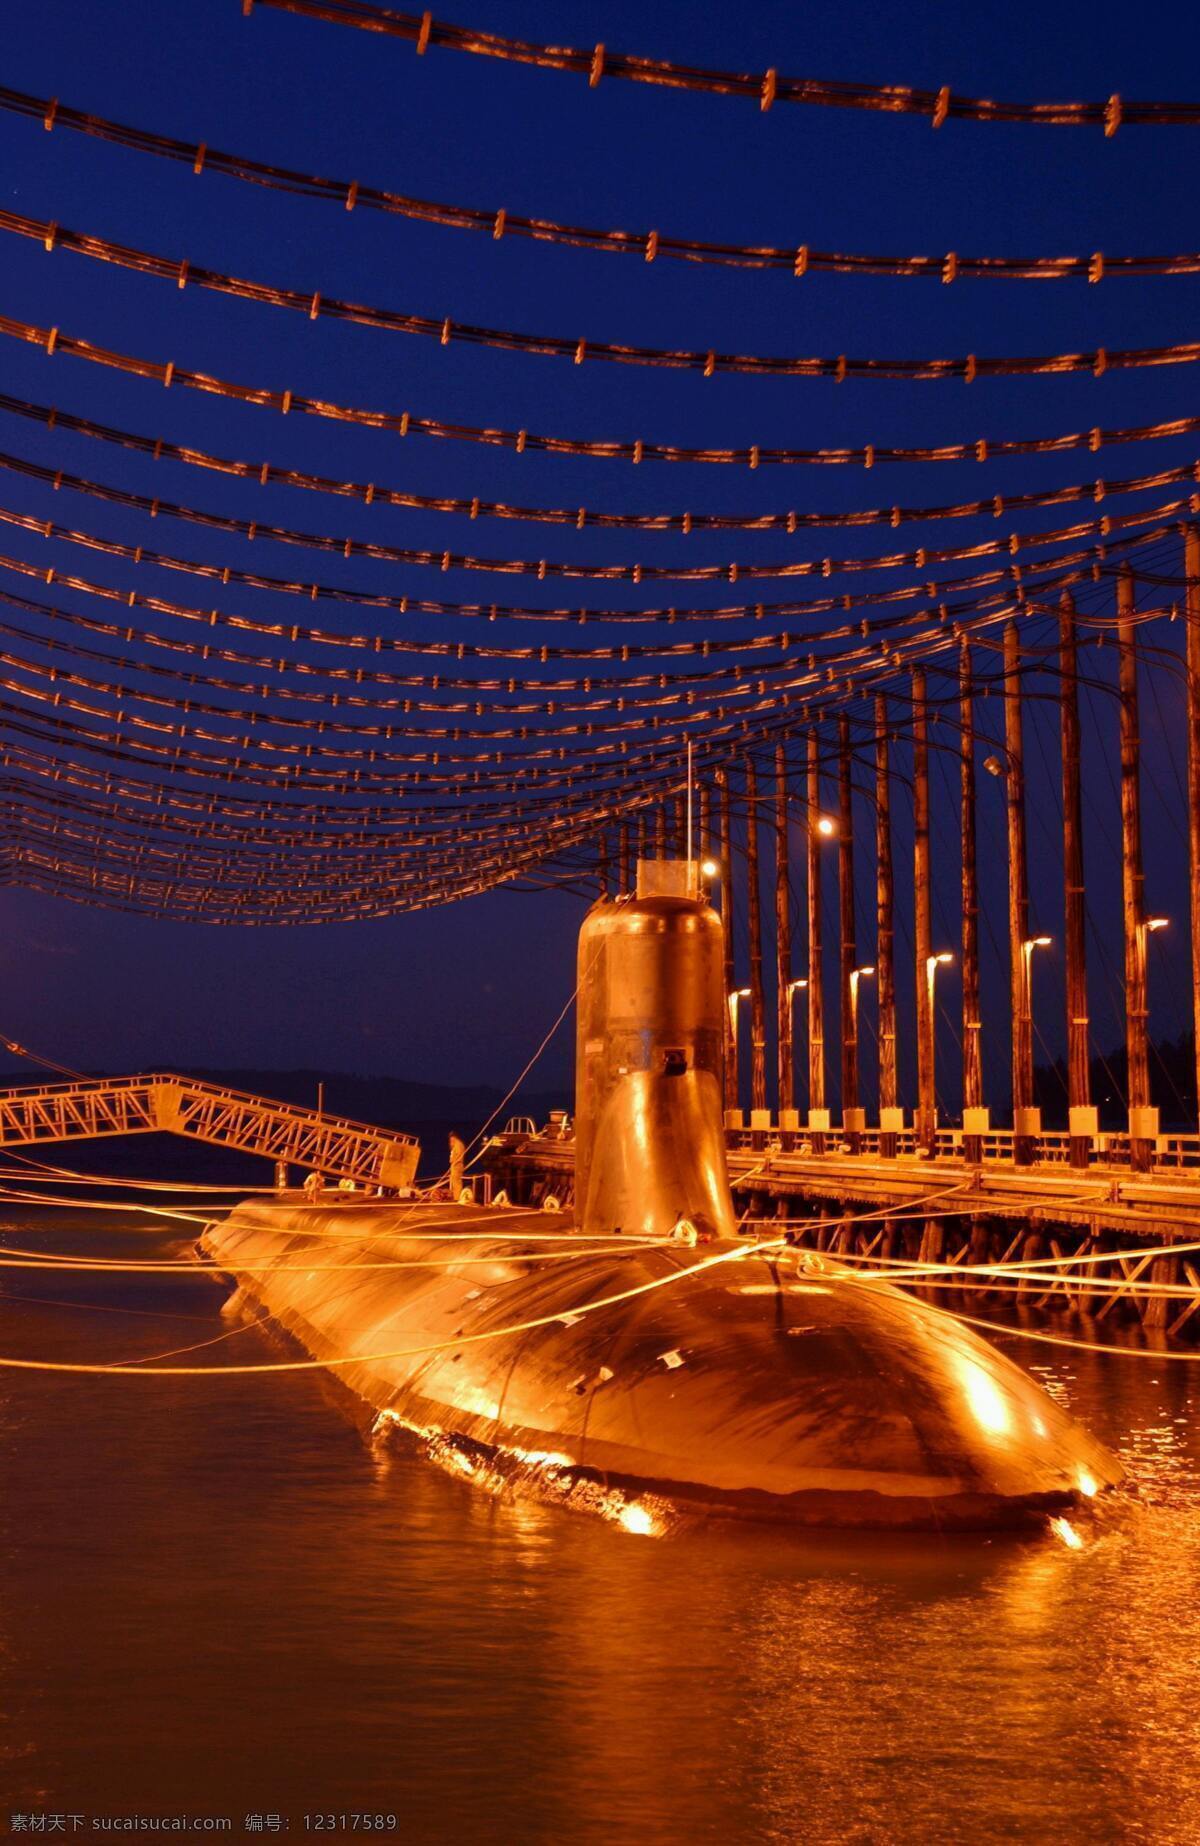 军事 军事武器 美国 摄影图库 武器 现代科技 夜景 吉米 卡特 号 核潜艇 卡特号核潜艇 海浪级 攻击潜艇 吉米卡特号 矢量图 日常生活